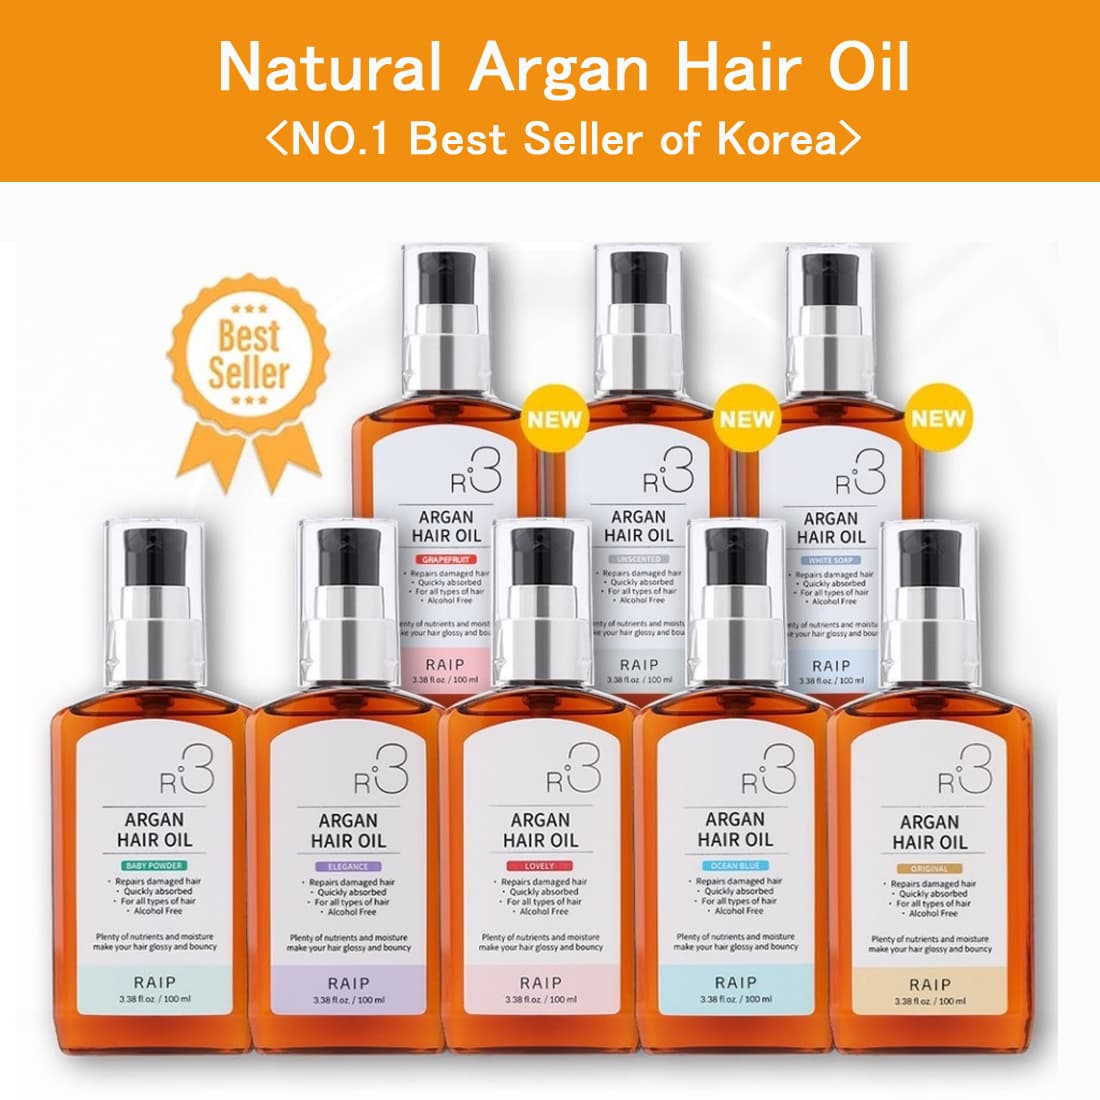 Natural Argan Hair Oil